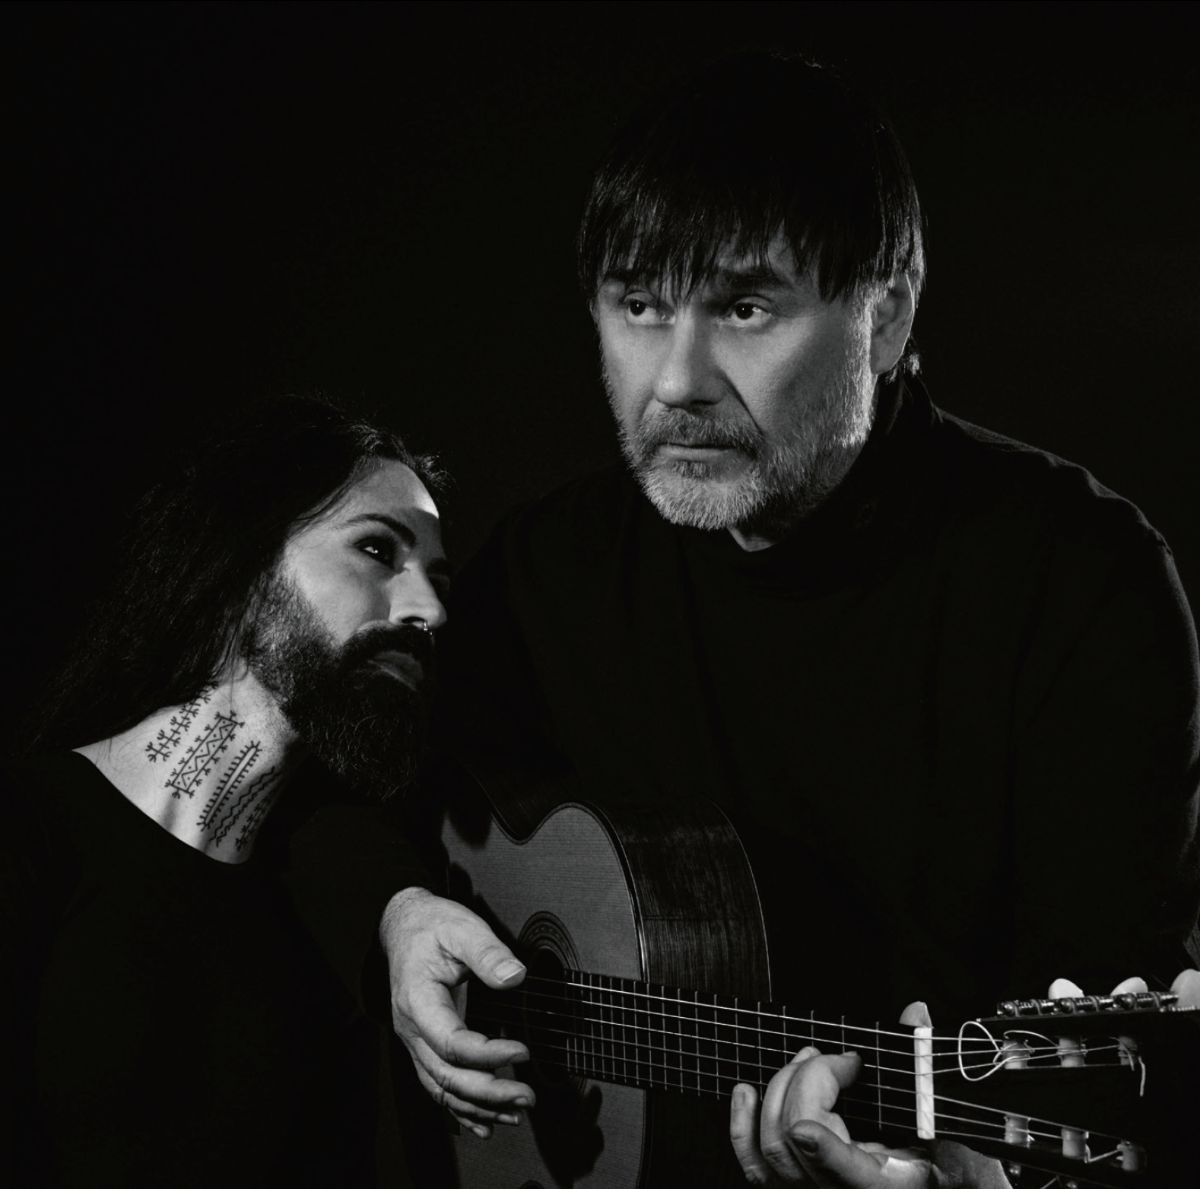 Božo Vrećo & Edin Karamazov, dva vrhunska umjetnika, predstavljaju novi studijski album Lachrimae